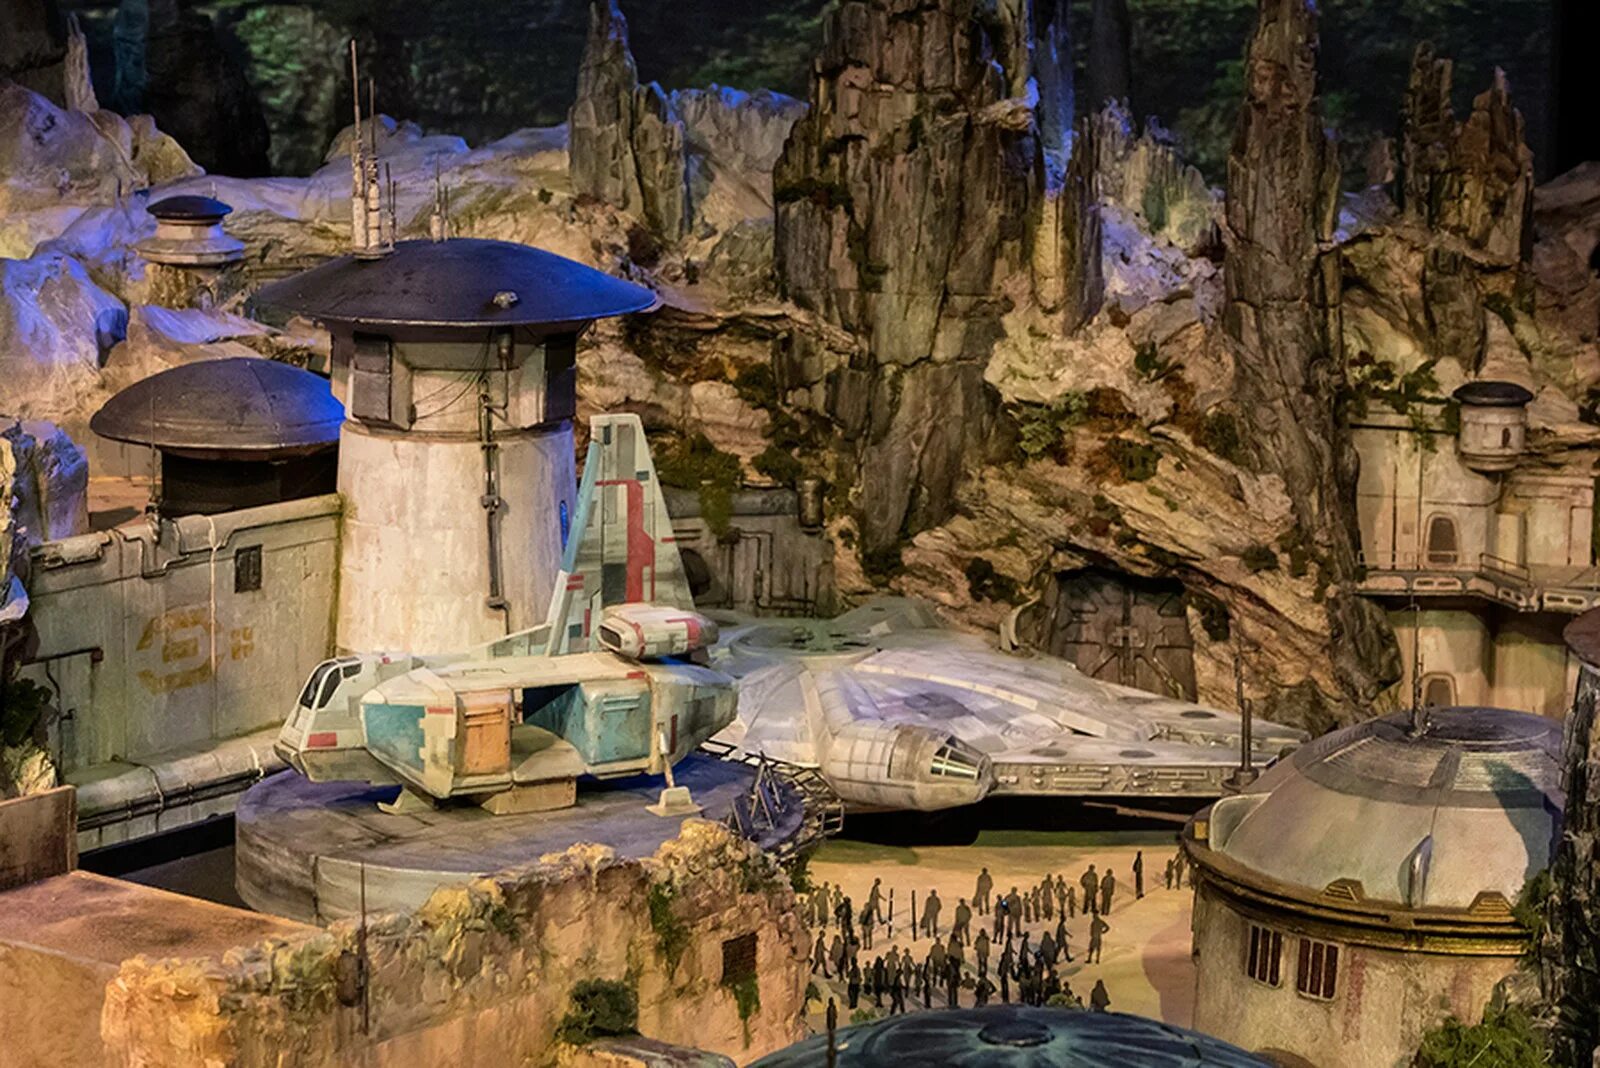 Avatar world особняк. Звездные войны парк развлечений. Диснейленд Звездные войны. Star Wars парк студия Дисней.